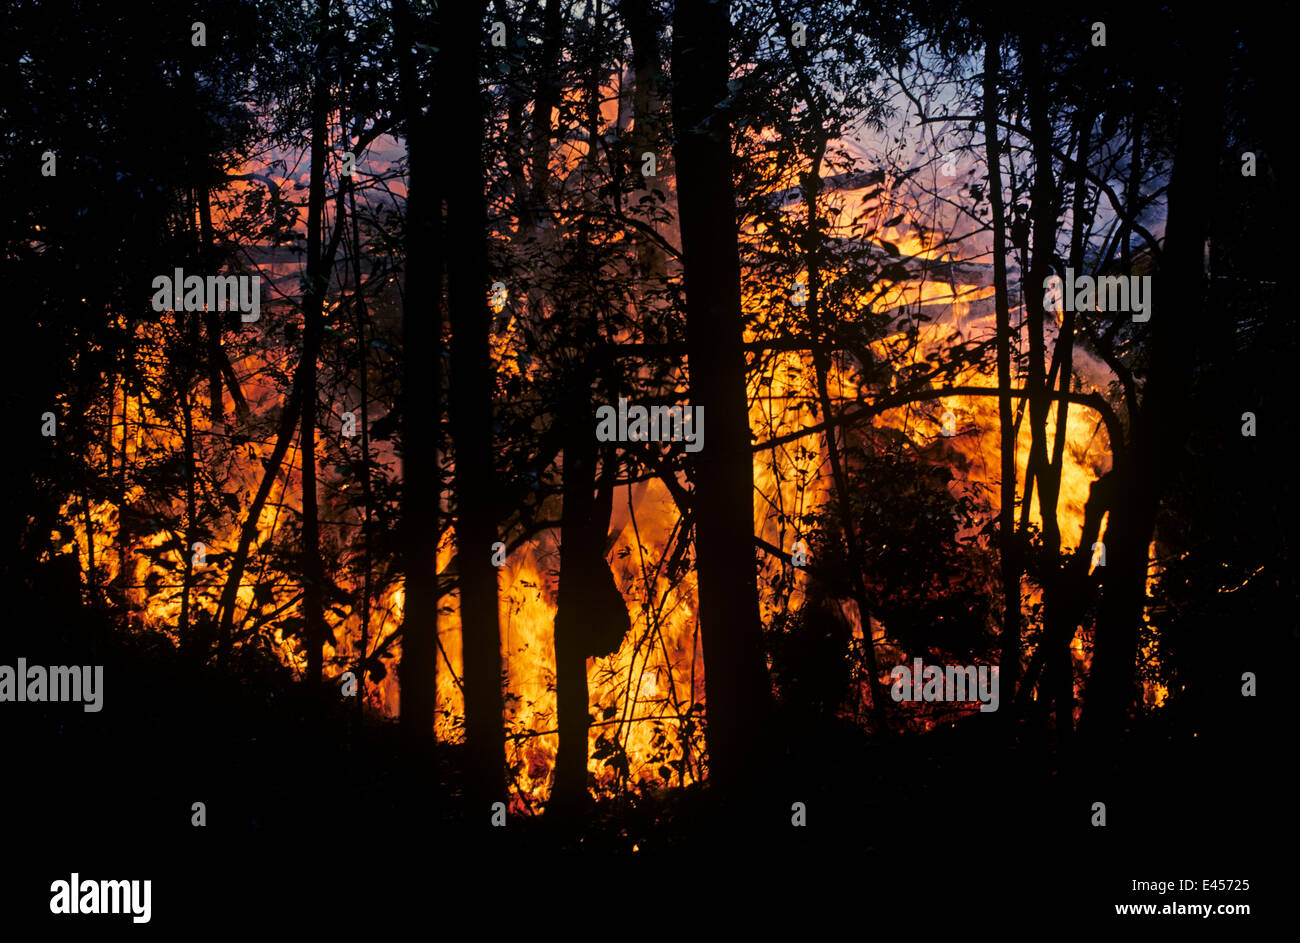 Lavastrom und entsprechenden Feuer durch Wald, Westkraters Vulkanausbruch, Virunga NP, demokratische Republik Kongo (ehemals Zaire) Stockfoto